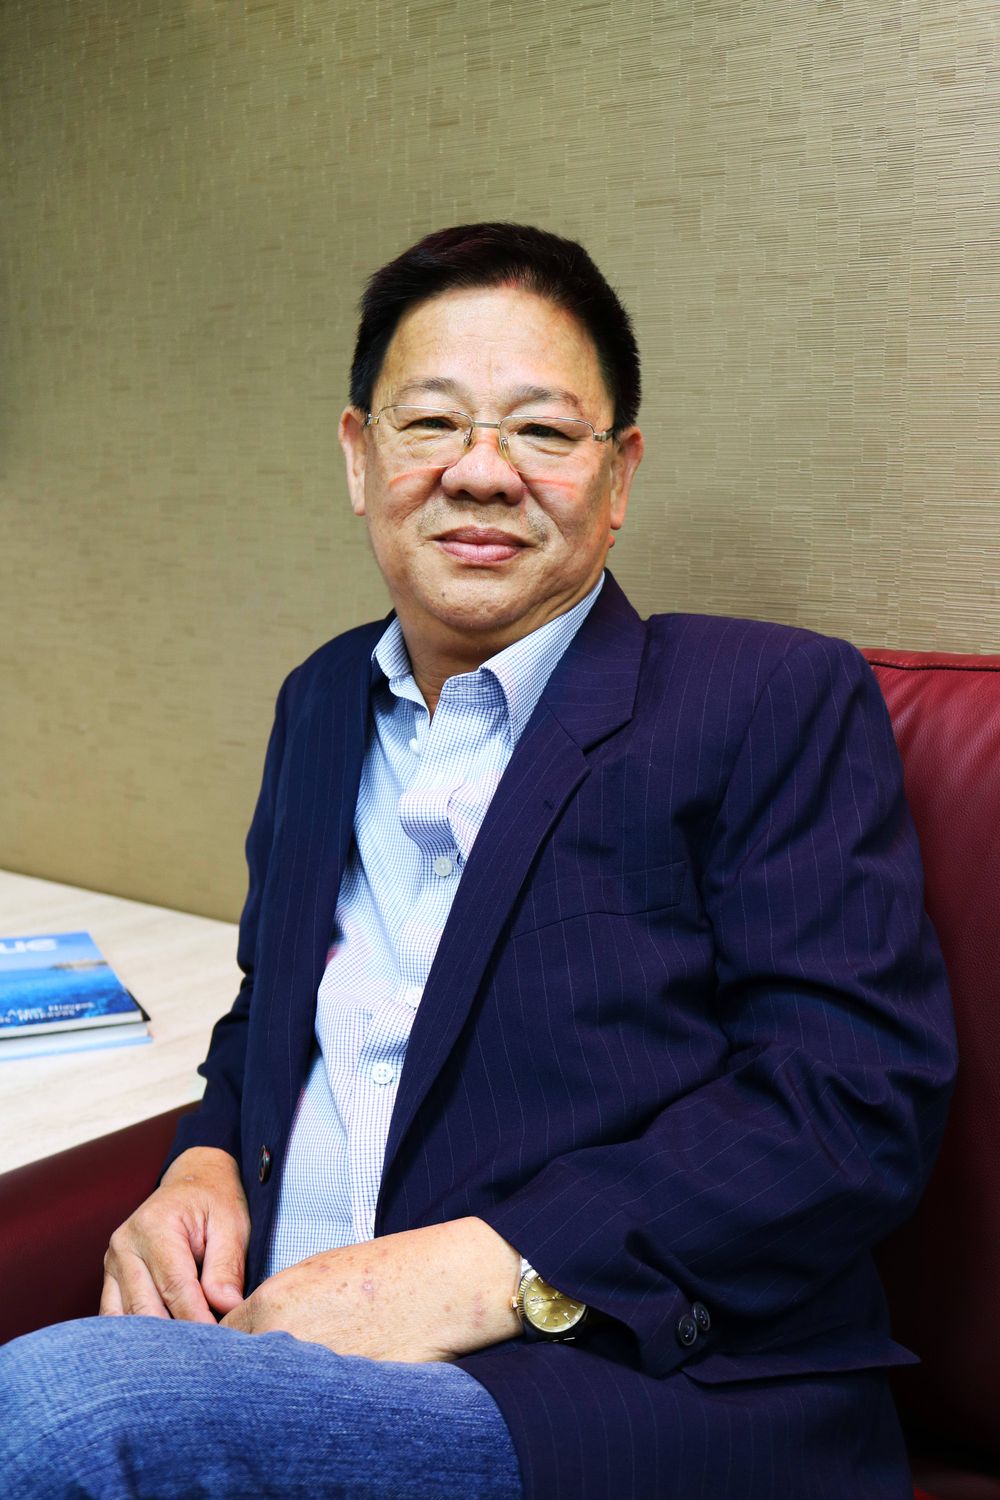 Alfred Tan, chairman